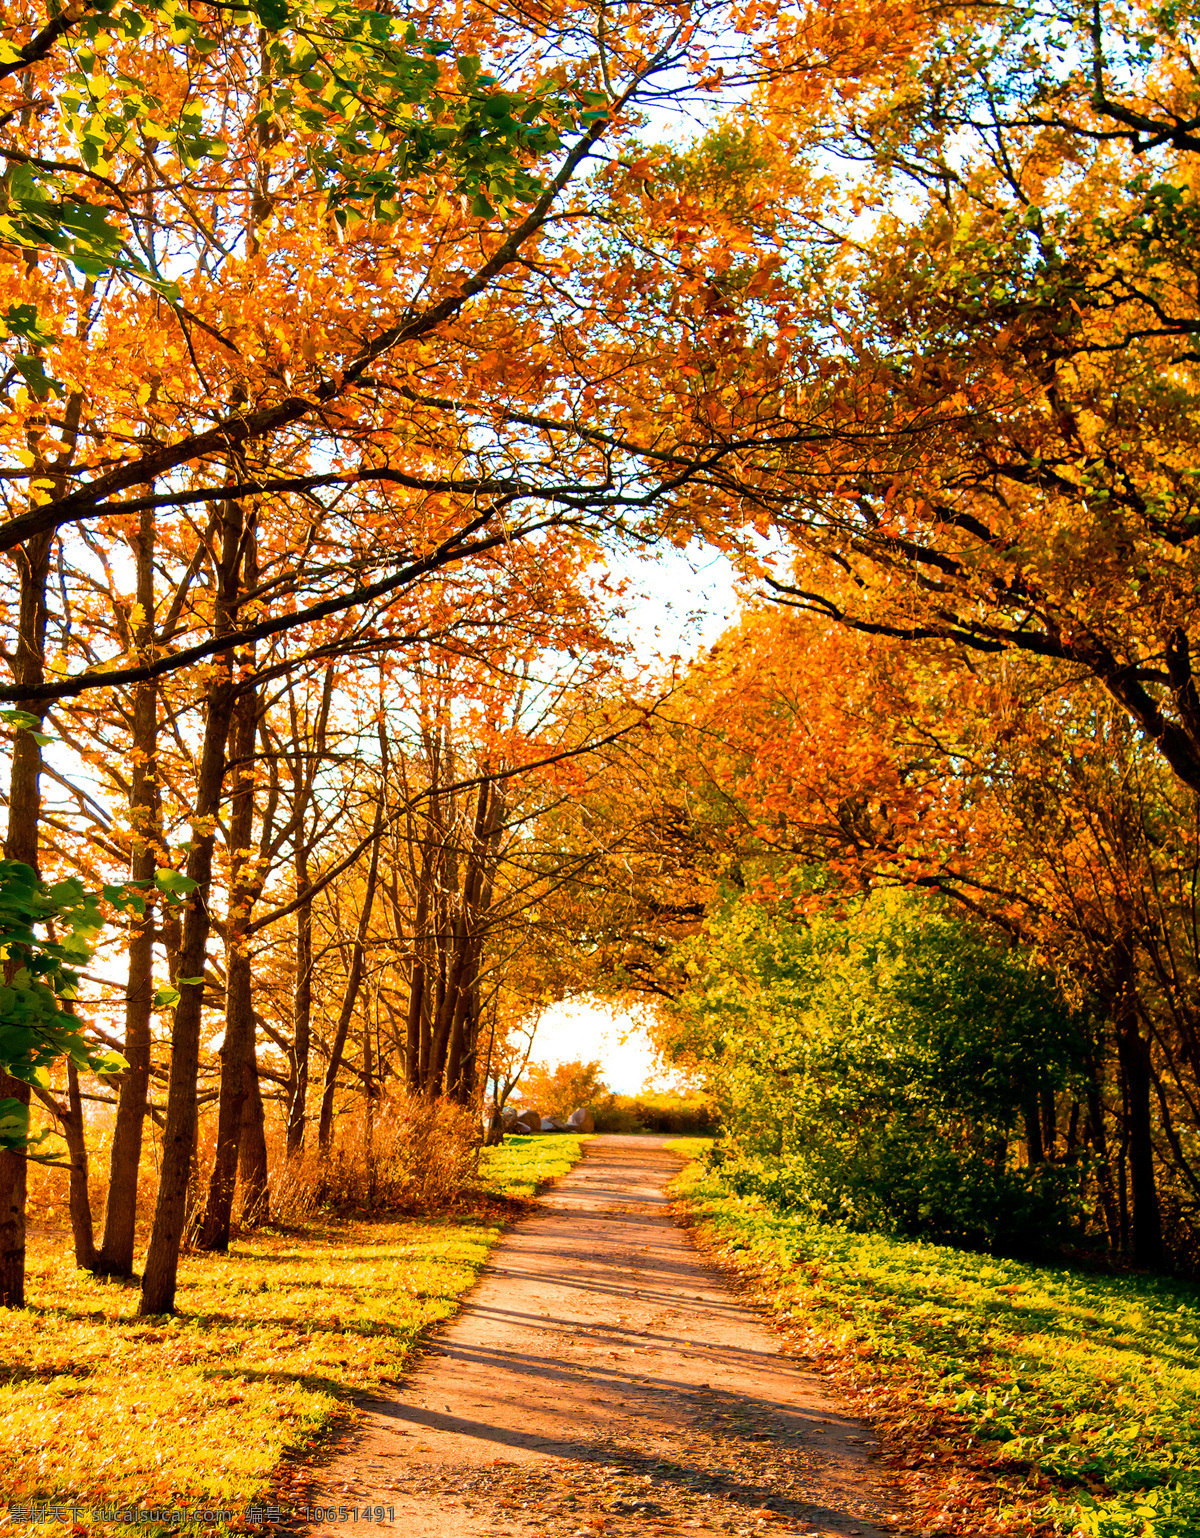 美丽 枫 树林 美丽风景 秋天 秋季 枫树 枫叶 林间小道 落叶 黄叶 风景摄影 山水风景 风景图片